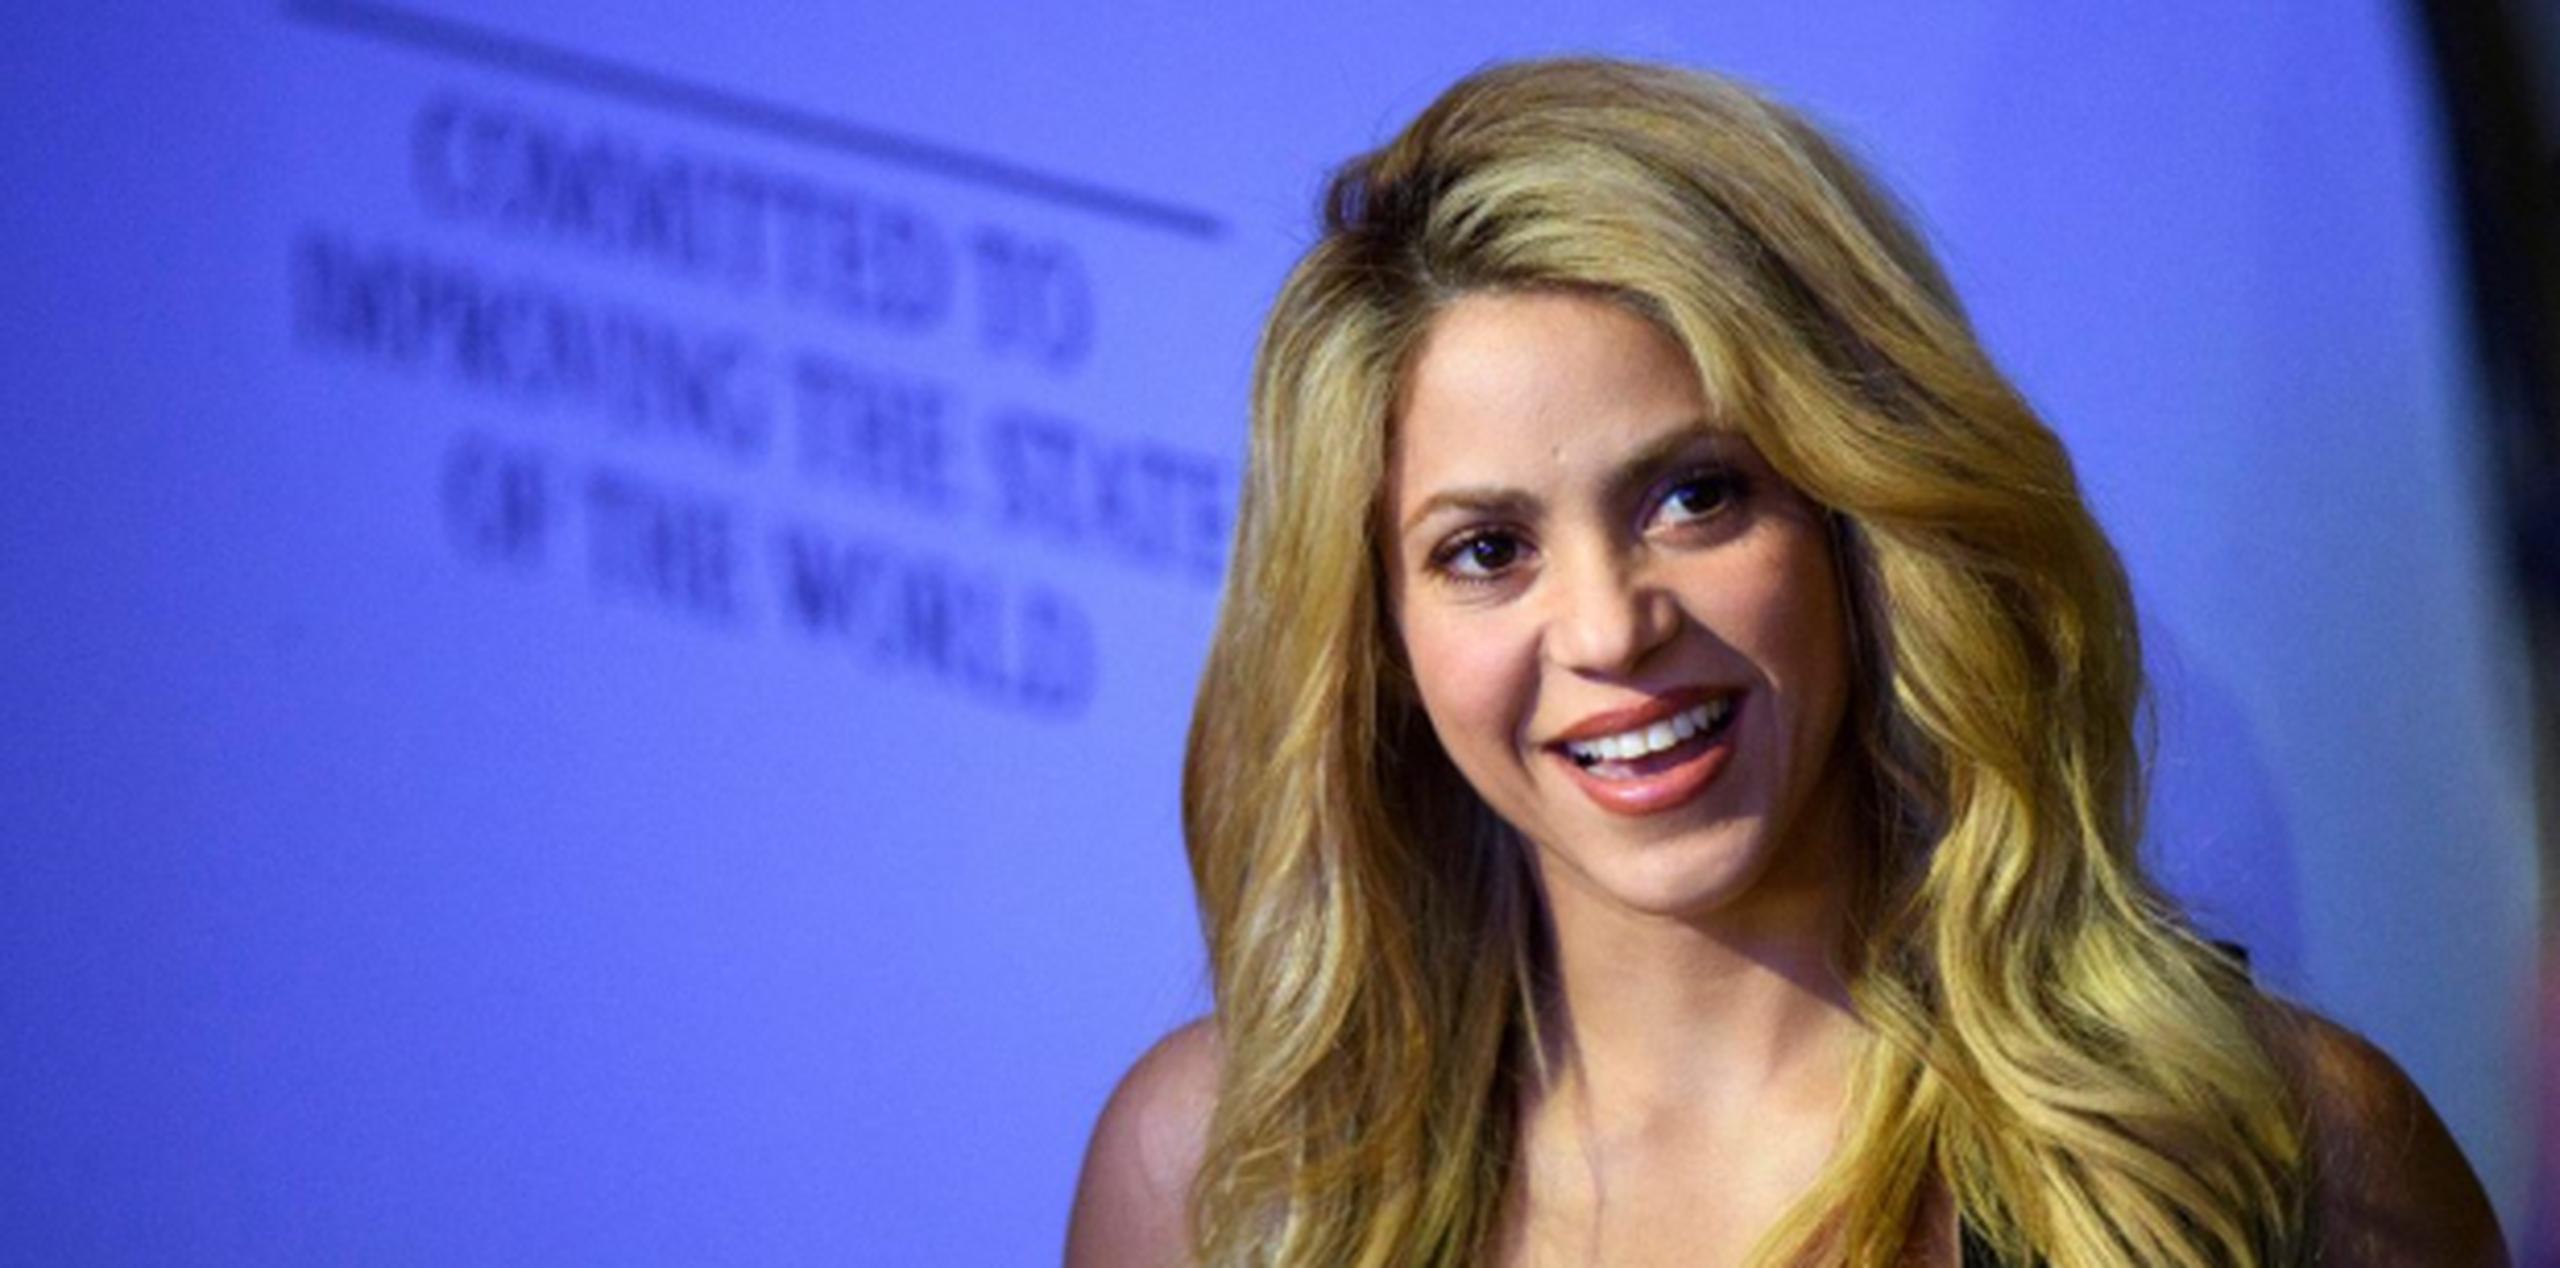 La diferencia de edad entre Shakira y Gerard no supuso un obstáculo para su historia de amor. (EFE)